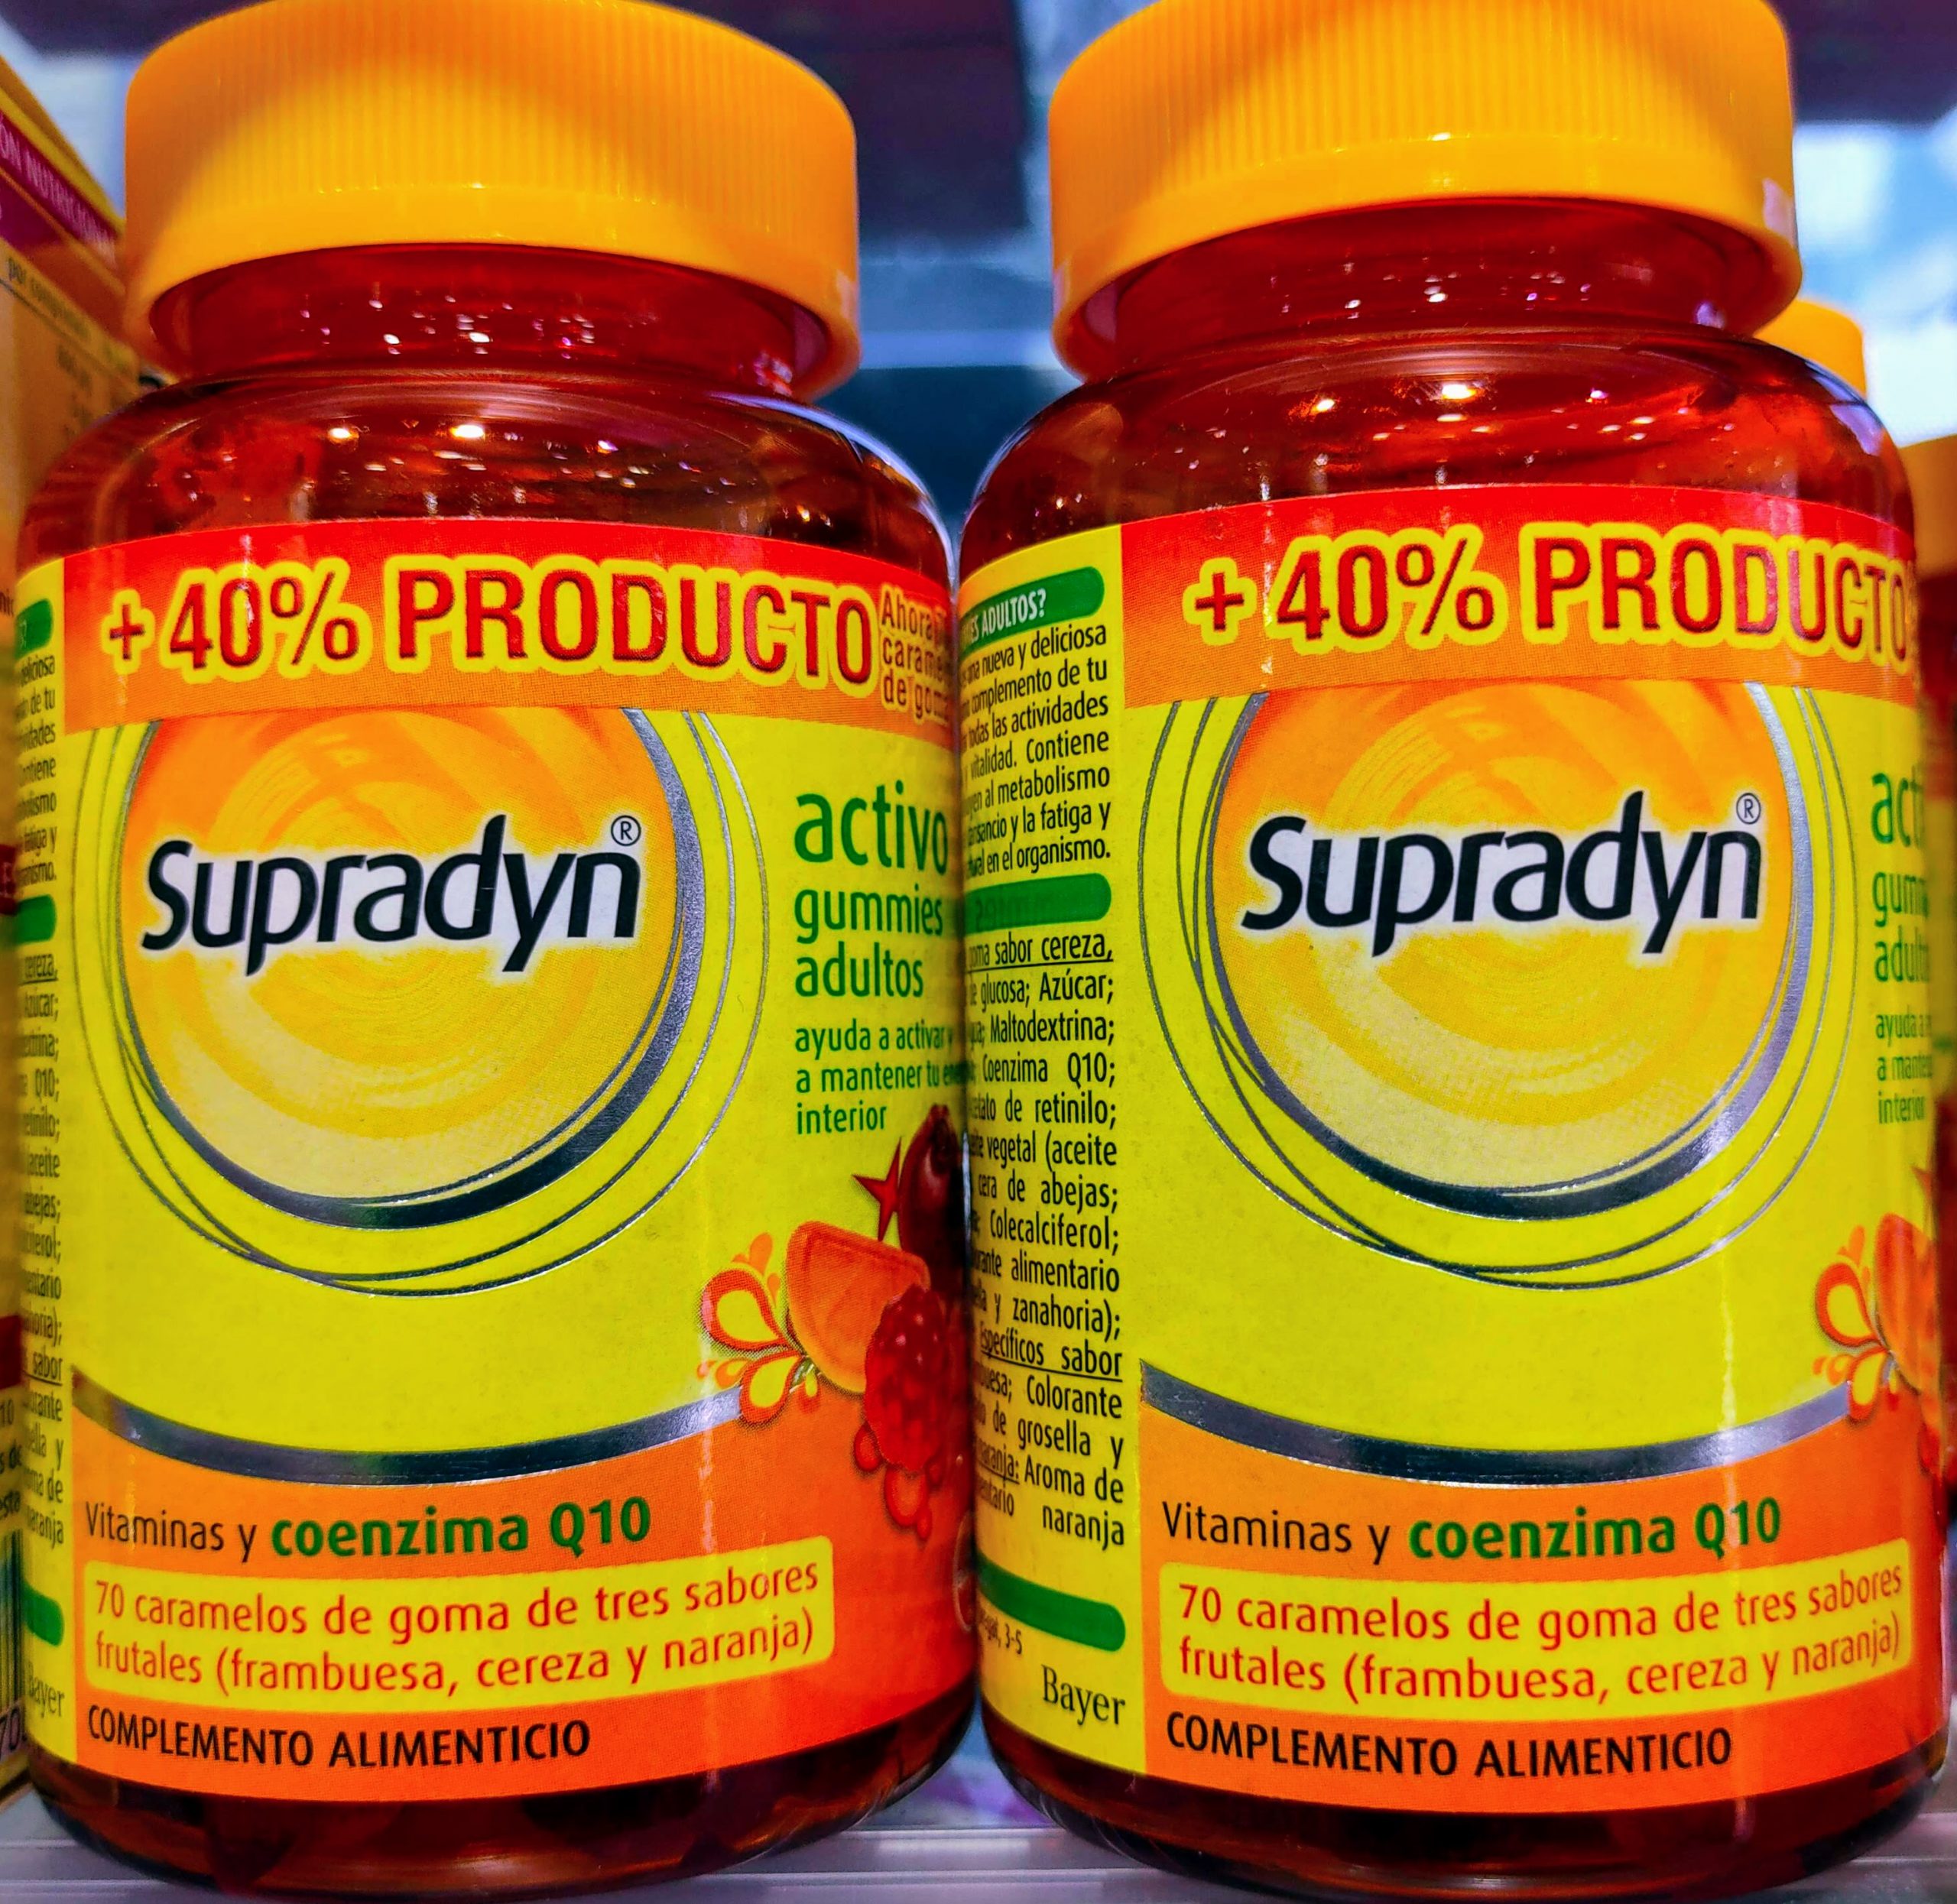 Supradyn® Activo es un multivitamínico con minerales que, complementando tu dieta habitual, ayuda a activar y mantener tu energía y vitalidad durante todo el día. Contiene coenzima Q10, un componente natural en el organismo.